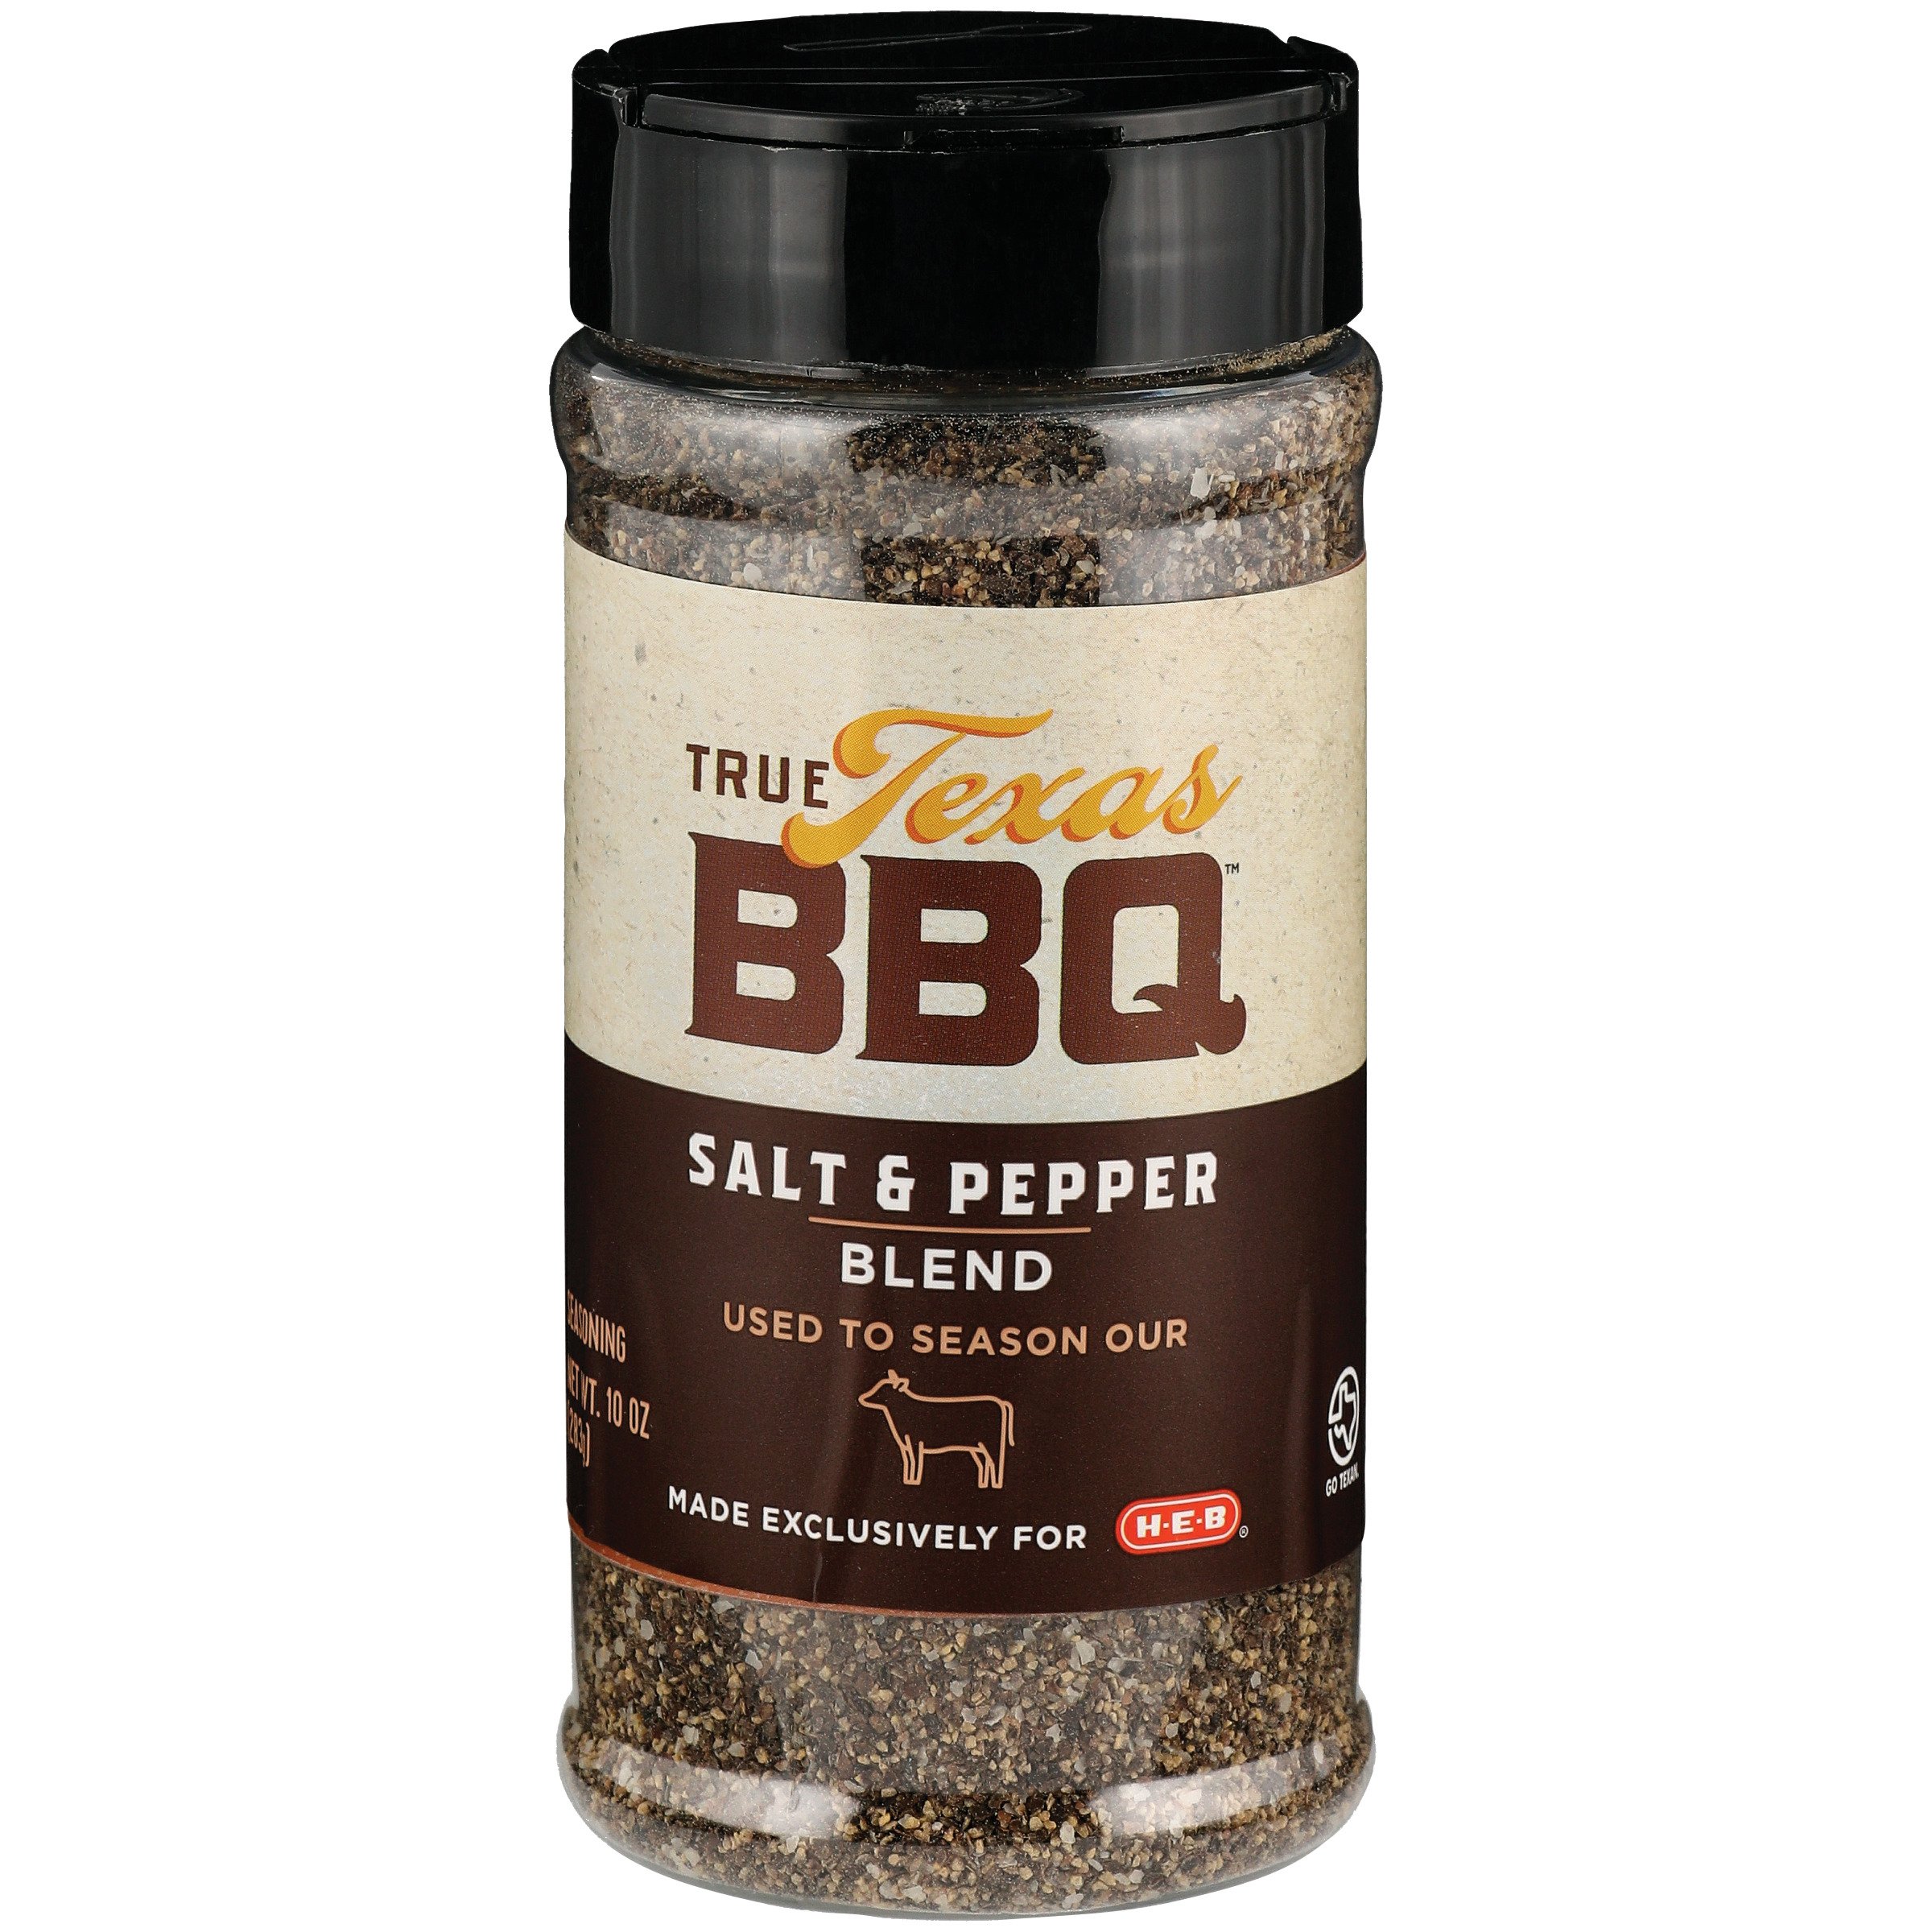 Afbreken Mevrouw mooi zo True Texas BBQ Salt & Pepper Blend - Shop Spice Mixes at H-E-B